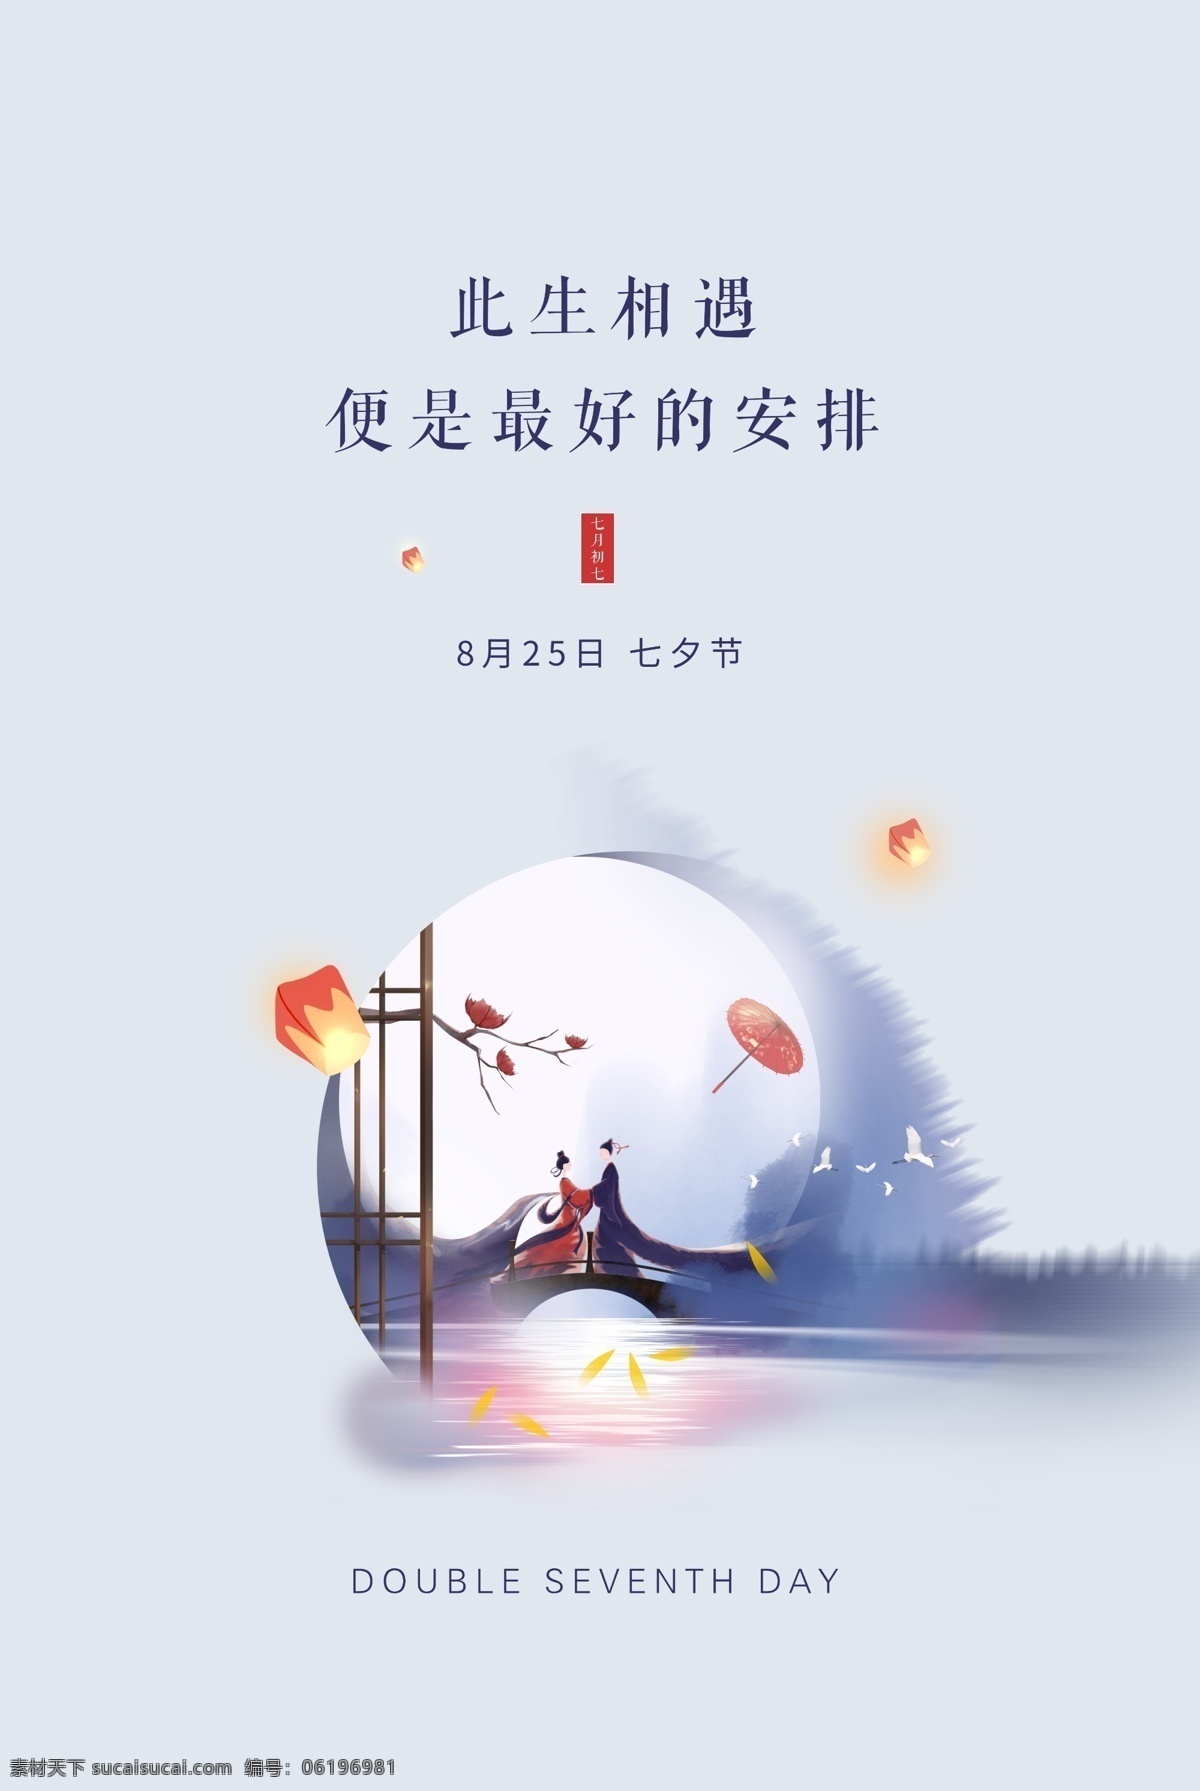 七夕 节日 传统 活动 促销 海报 传统节日海报